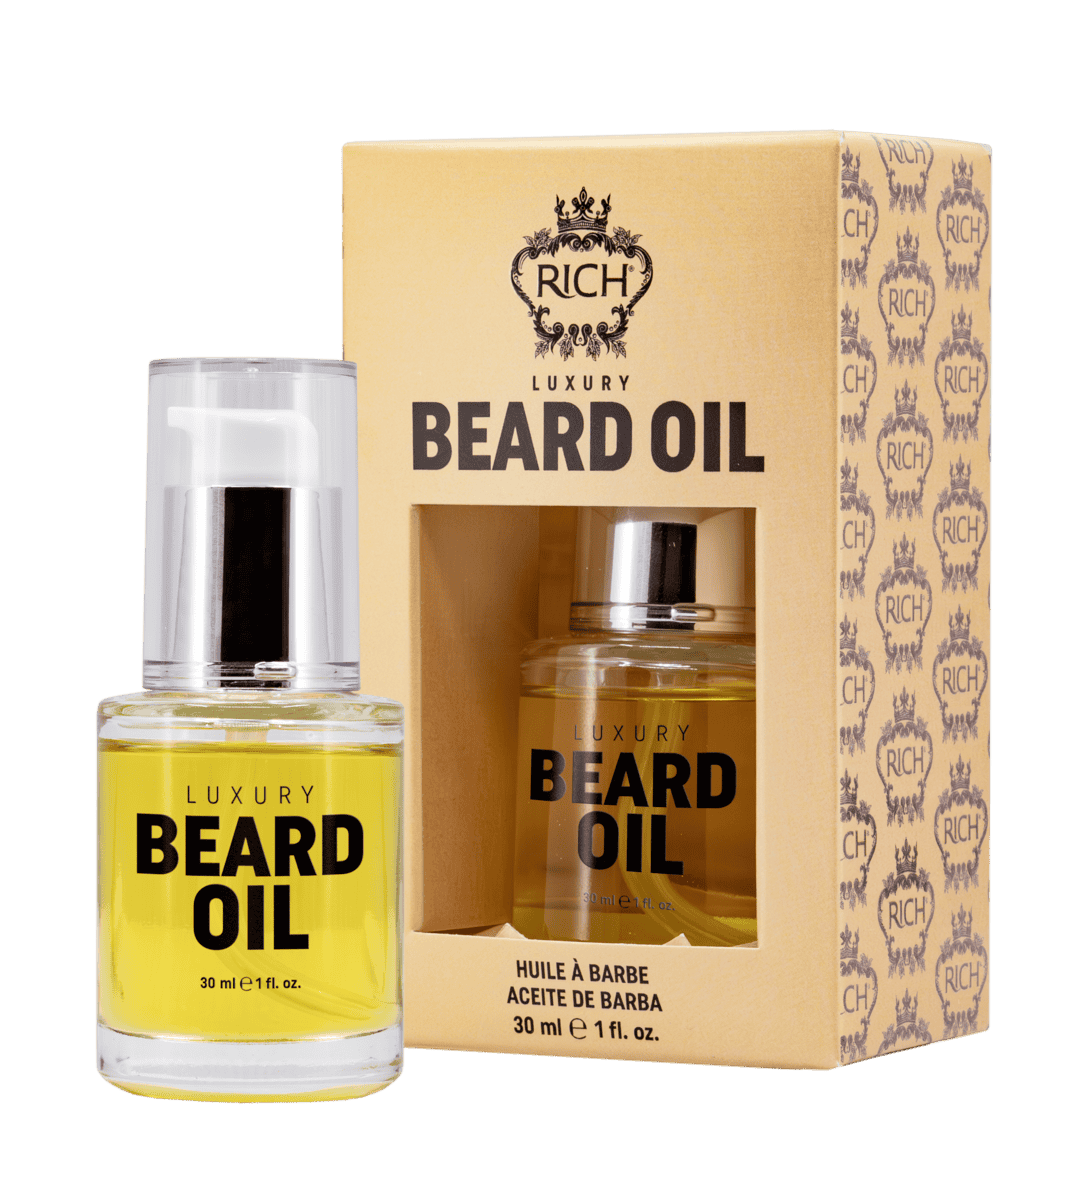 RICH Luxury Beard Oil 30 ml